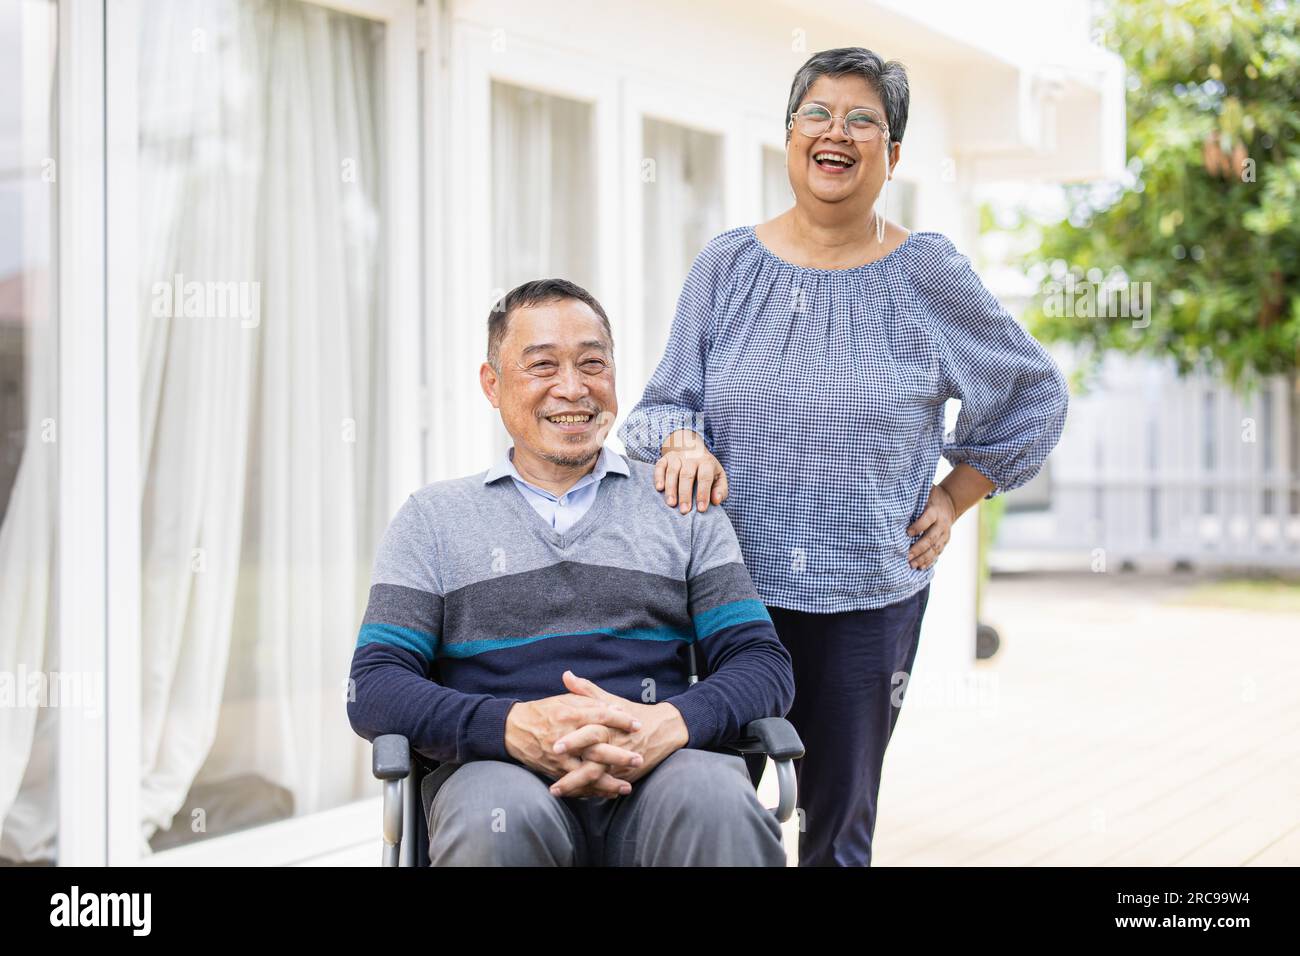 portrait adulte couple amoureux homme utilisateur de fauteuil roulant, famille de retraités avec épouse âgée heureuse en bonne santé Banque D'Images